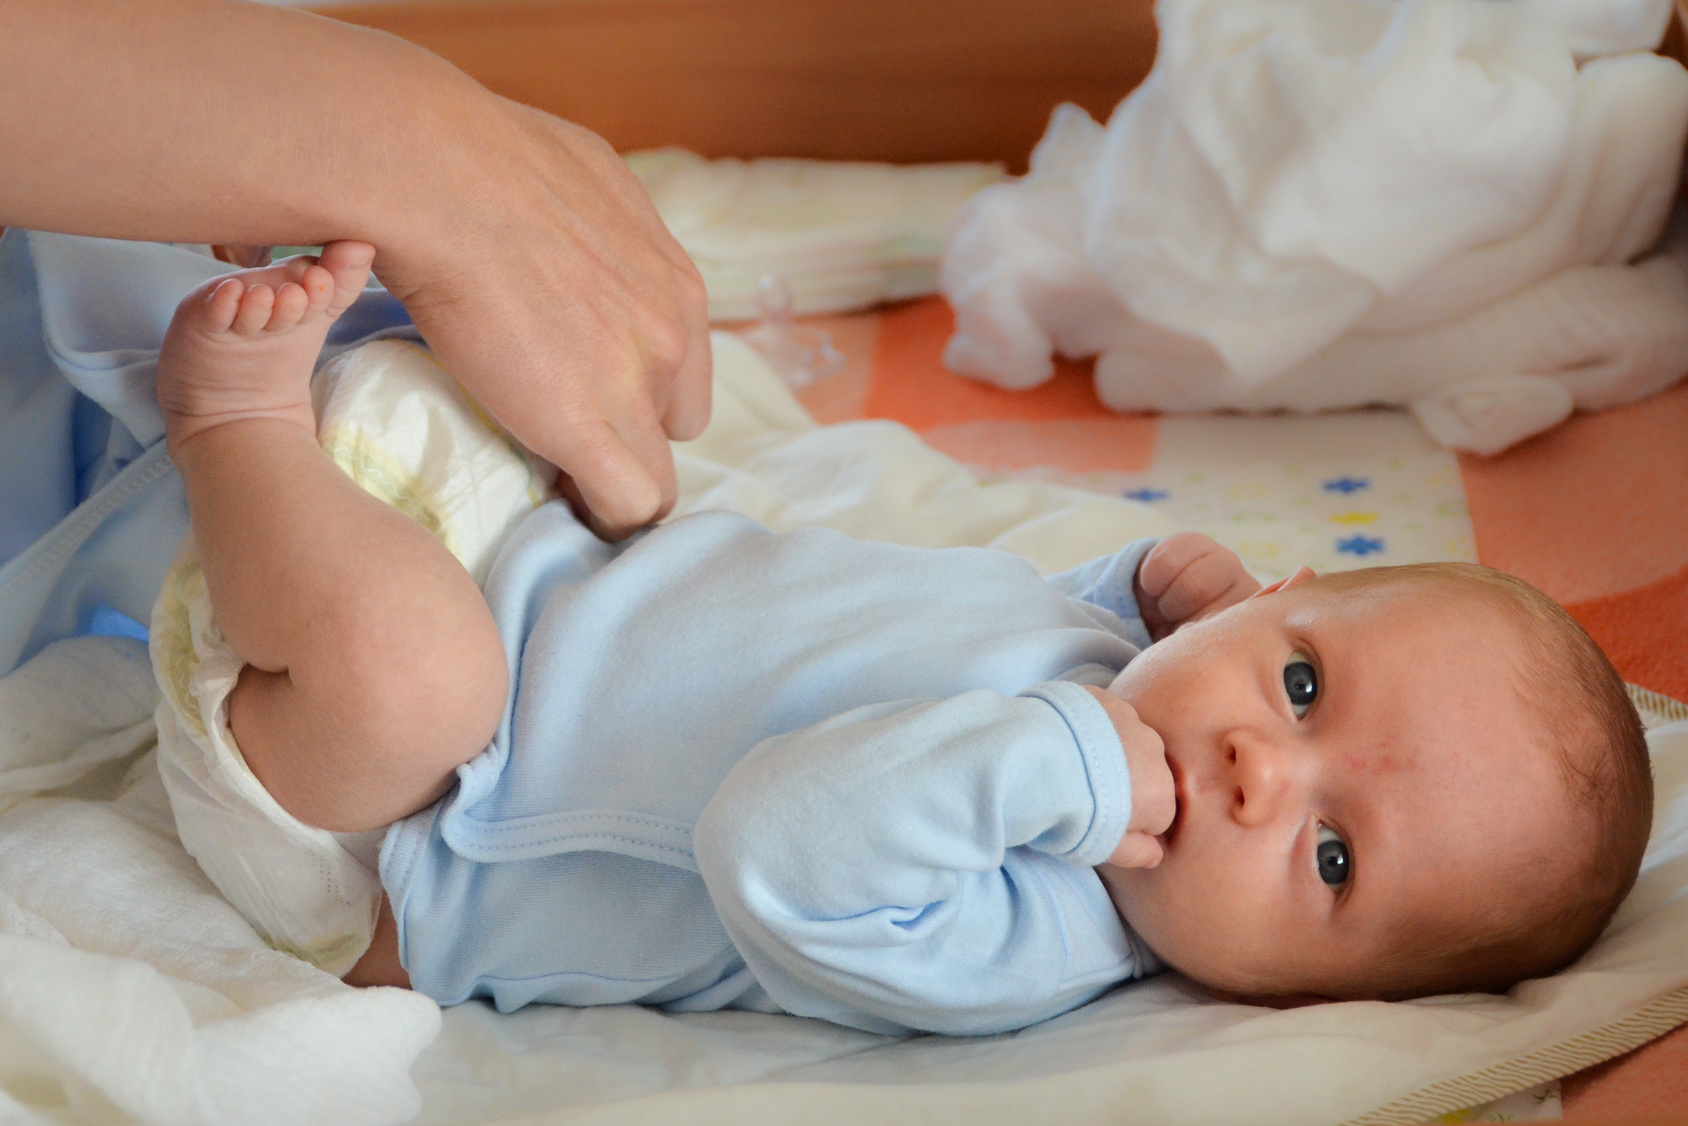 Baby-Wischtücher mit Chemikalien: Das sollten Sie wissen!